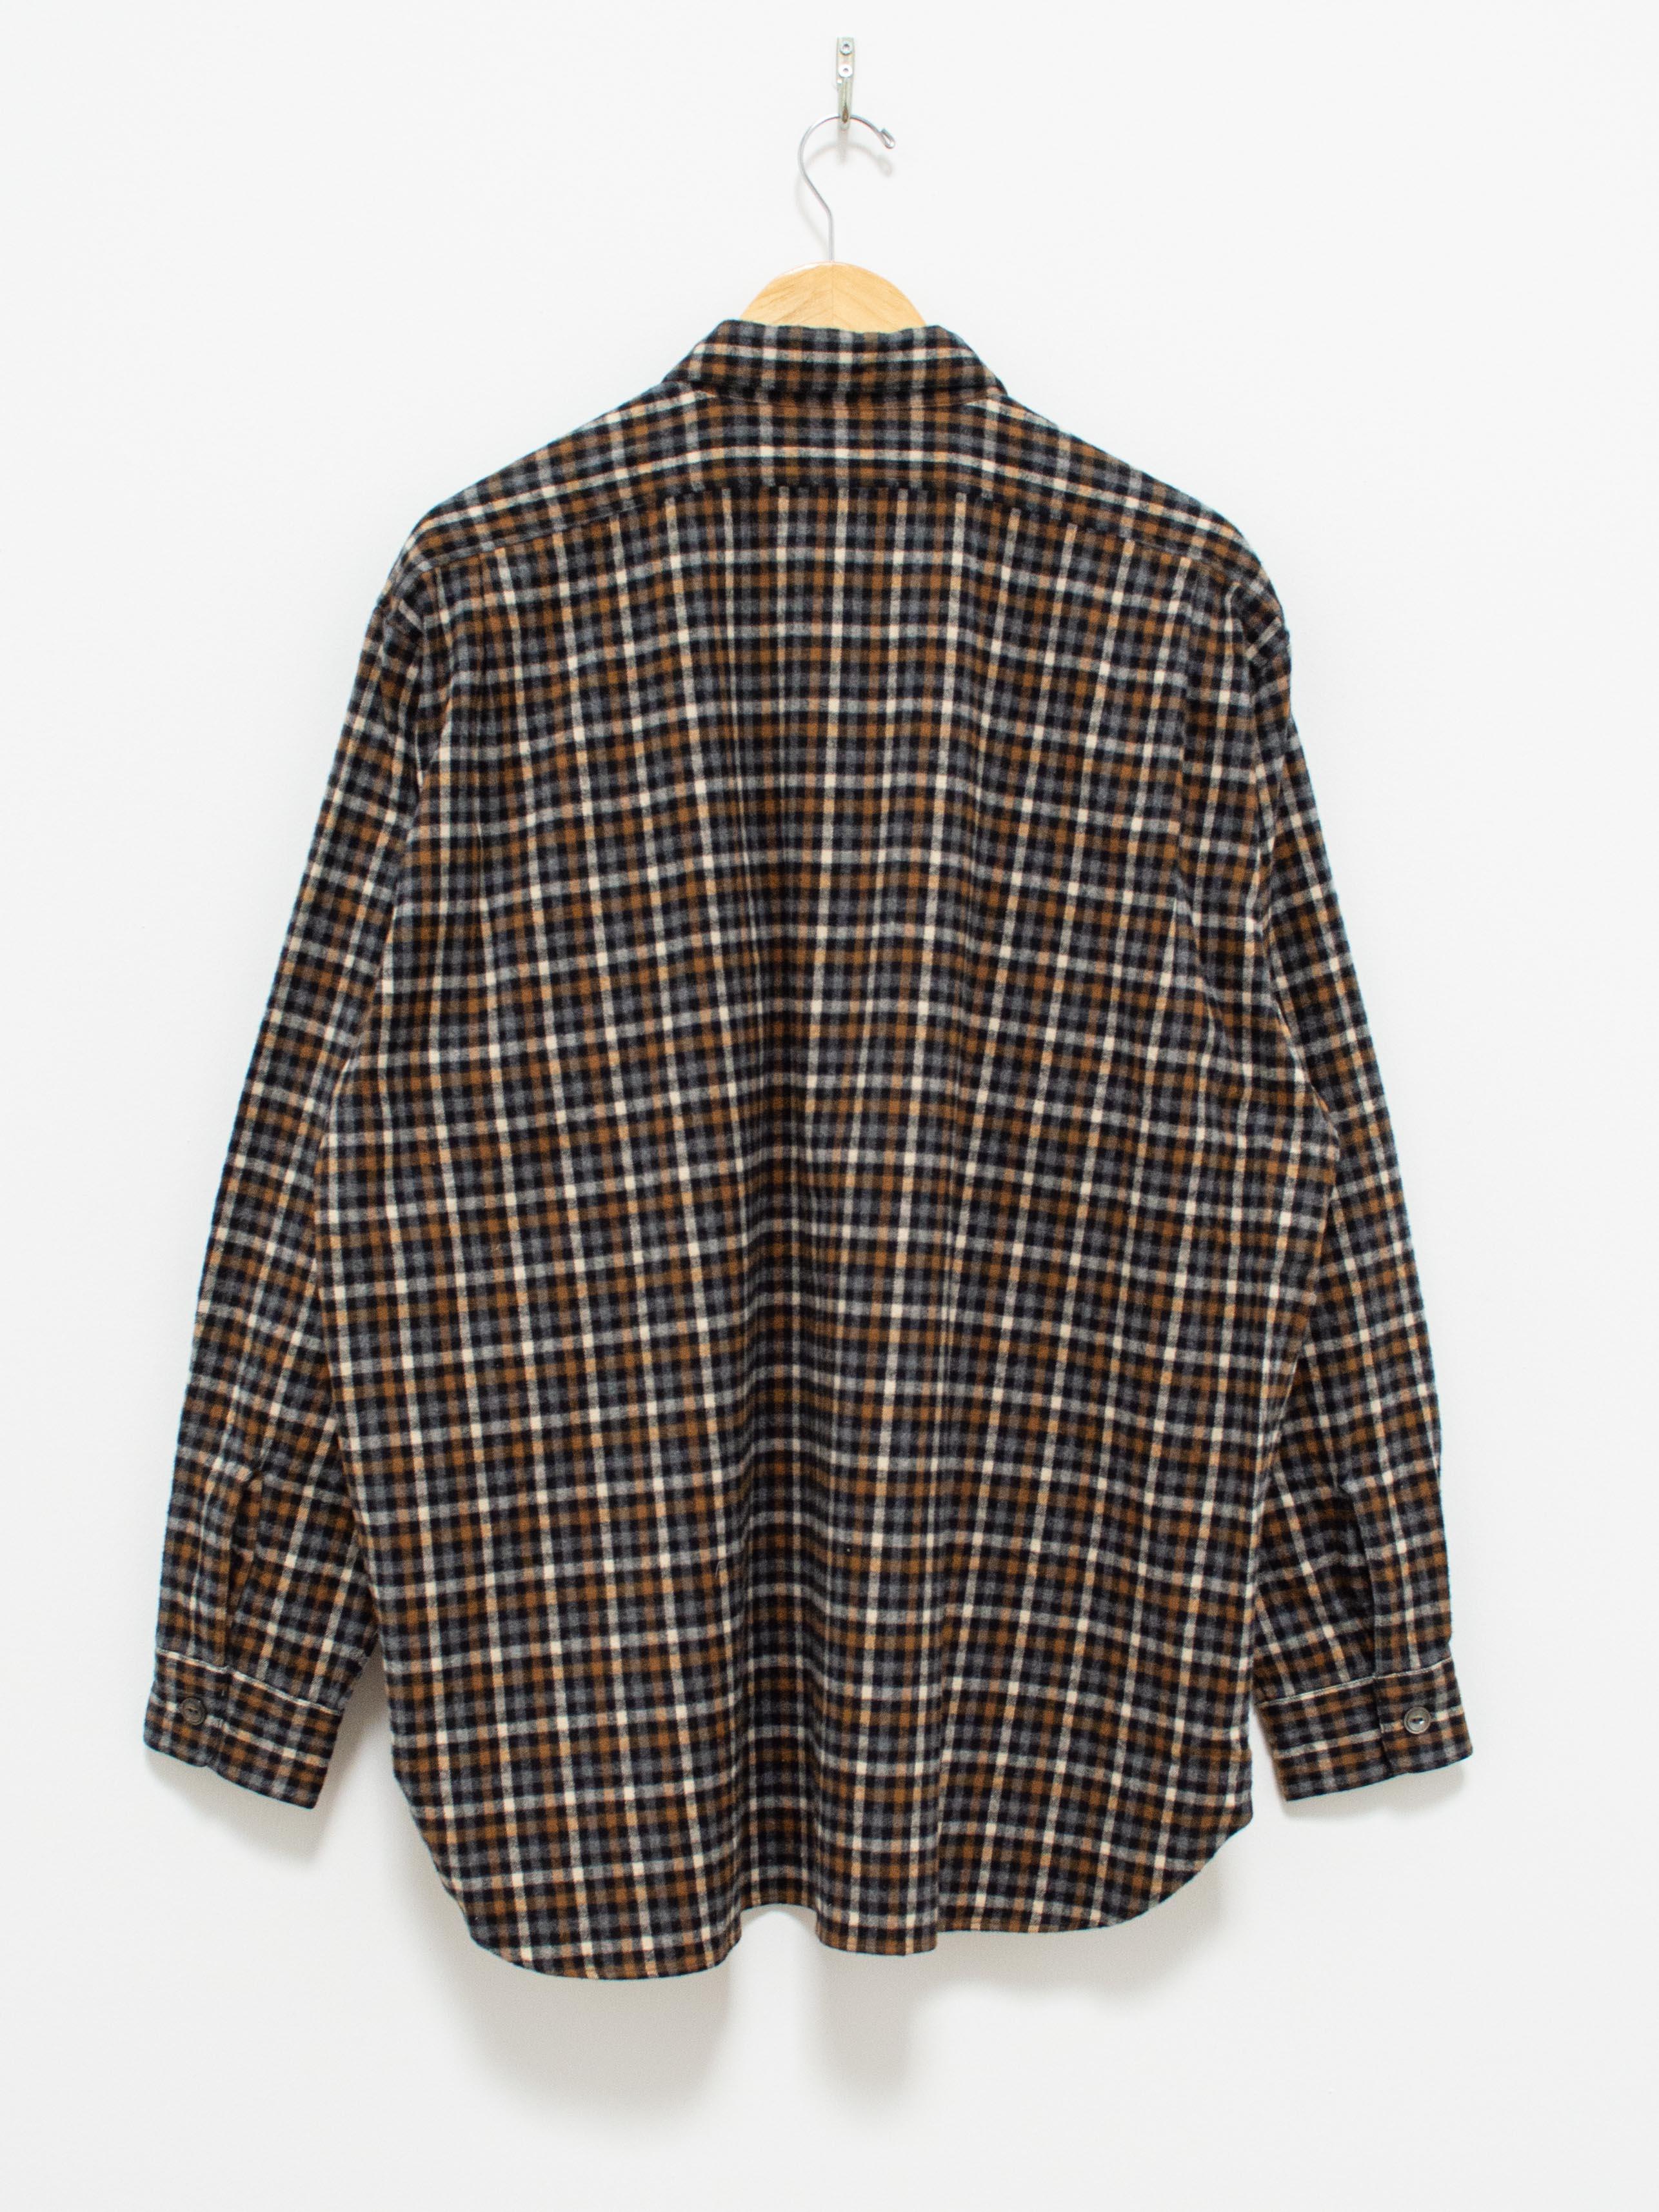 Namu Shop - Fujito Fatigue Shirt - Black x Brown Check